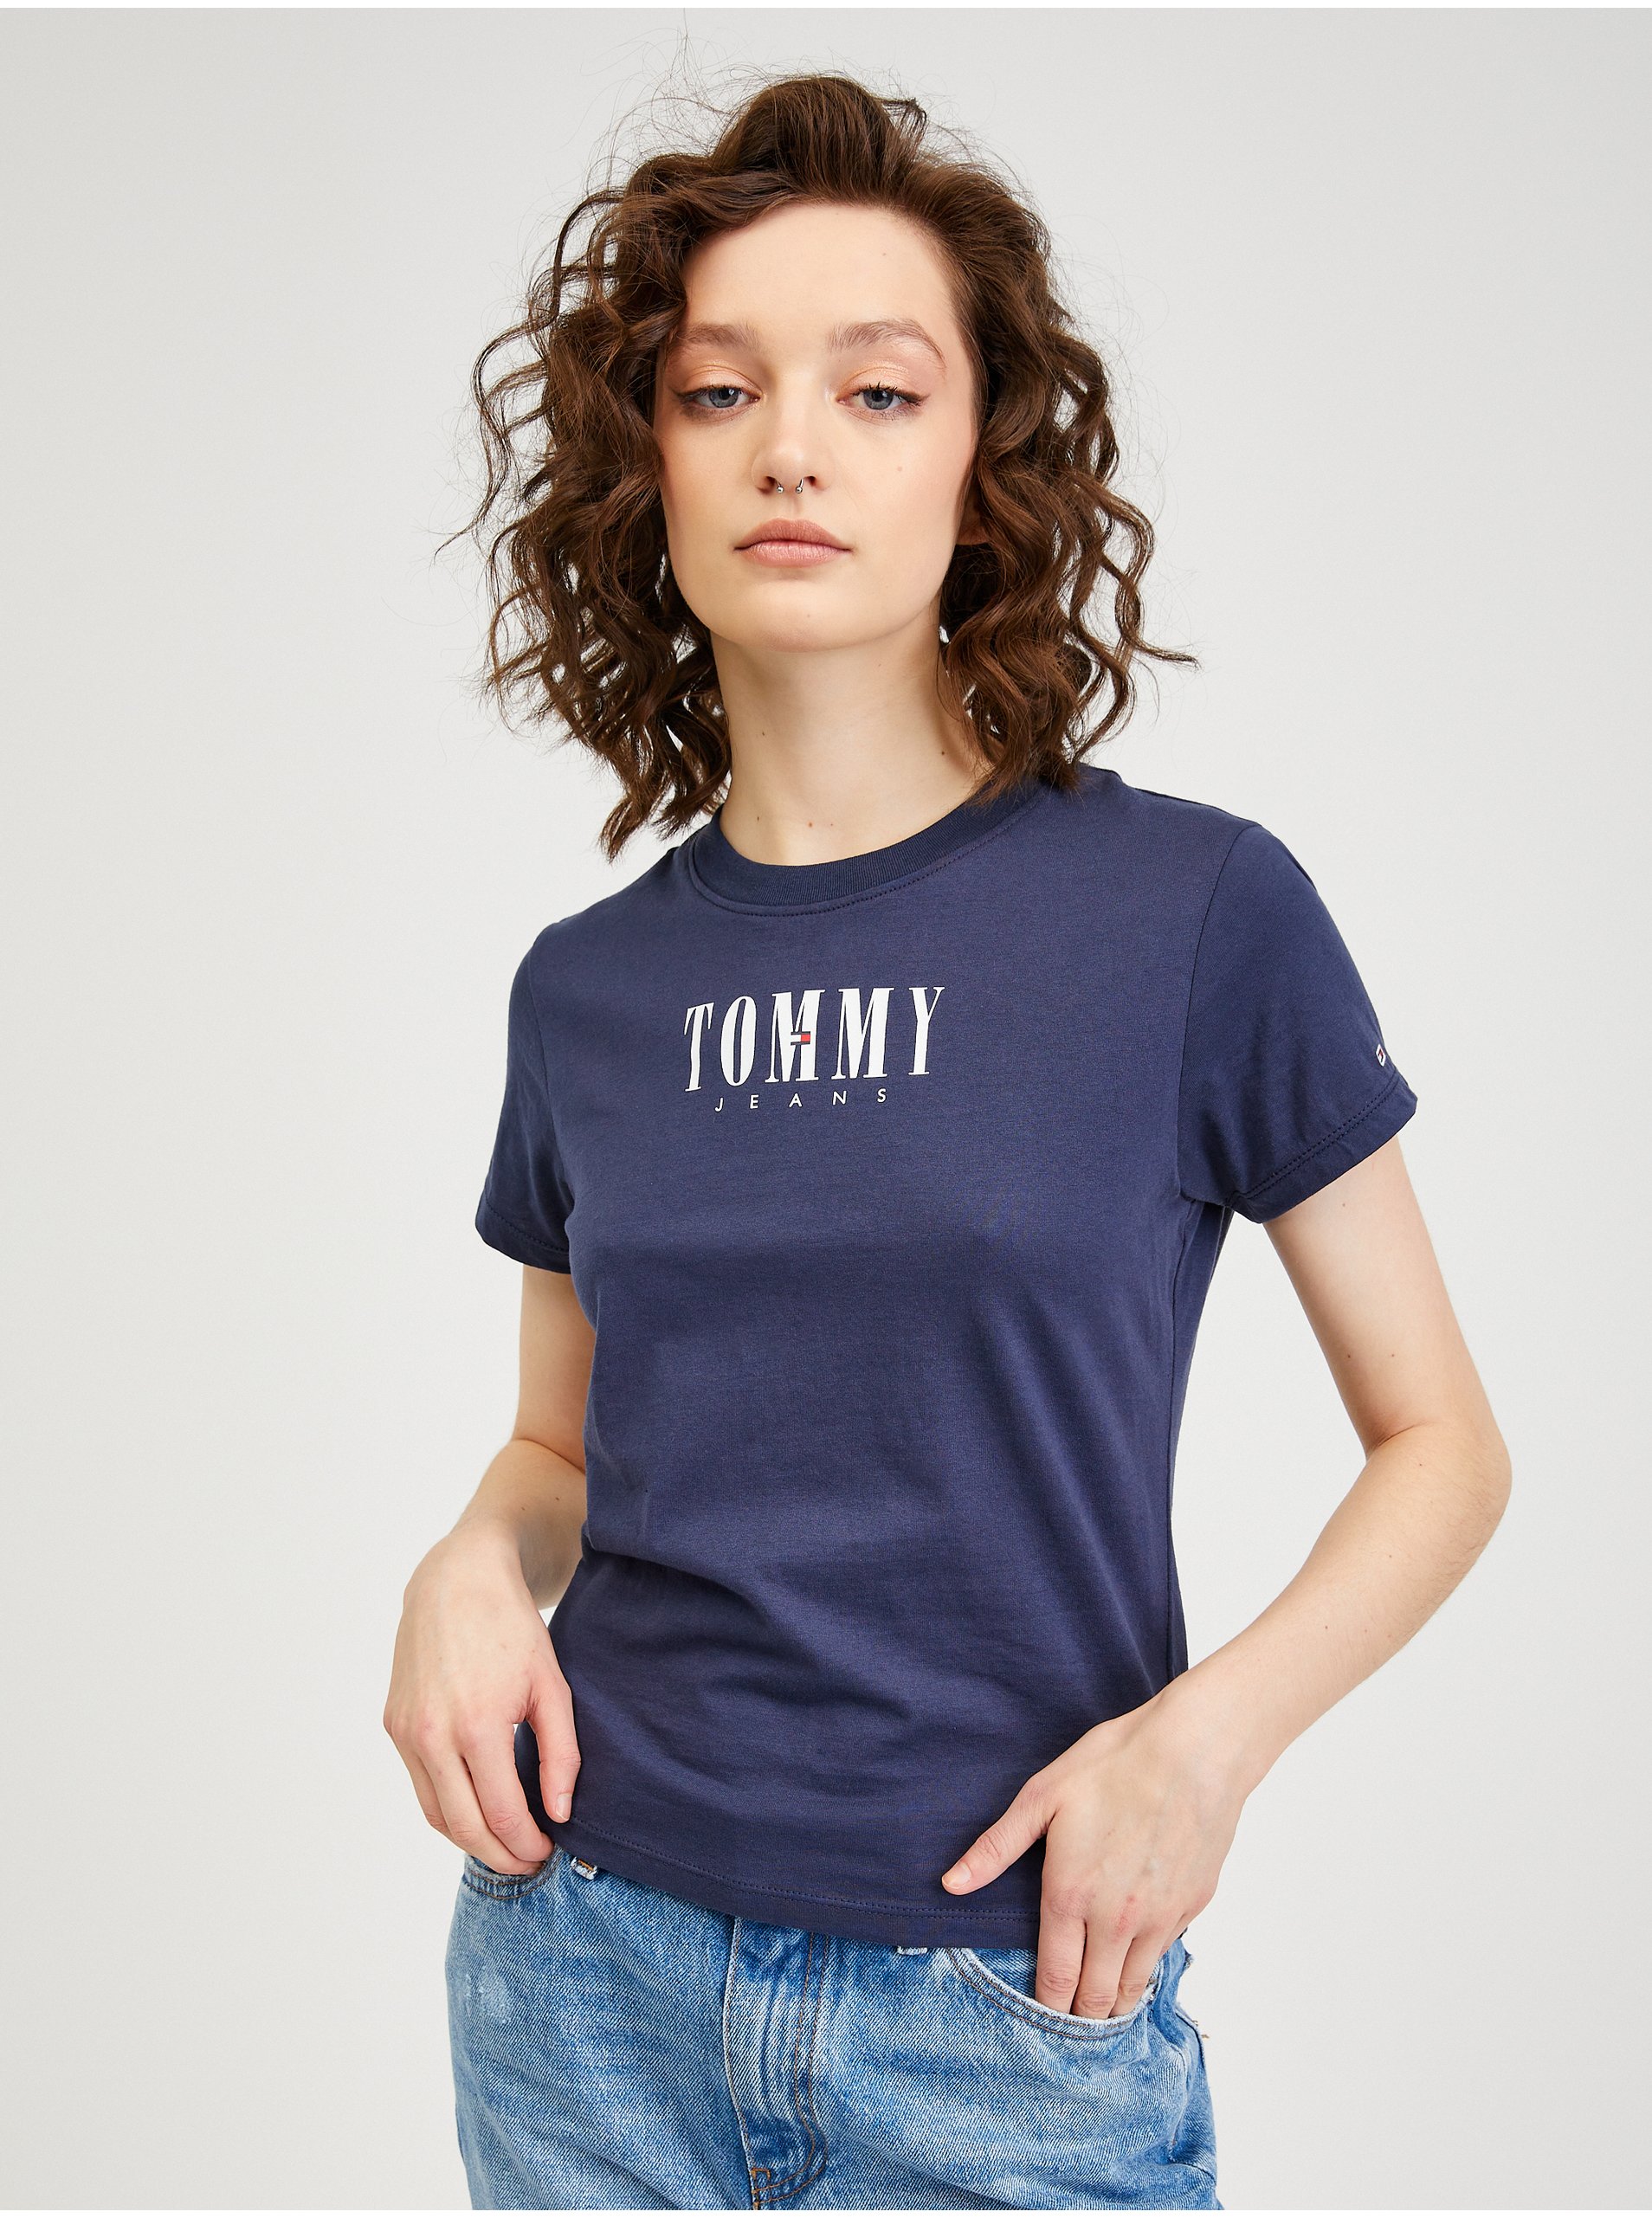 Lacno Tmavomodré dámske tričko Tommy Jeans